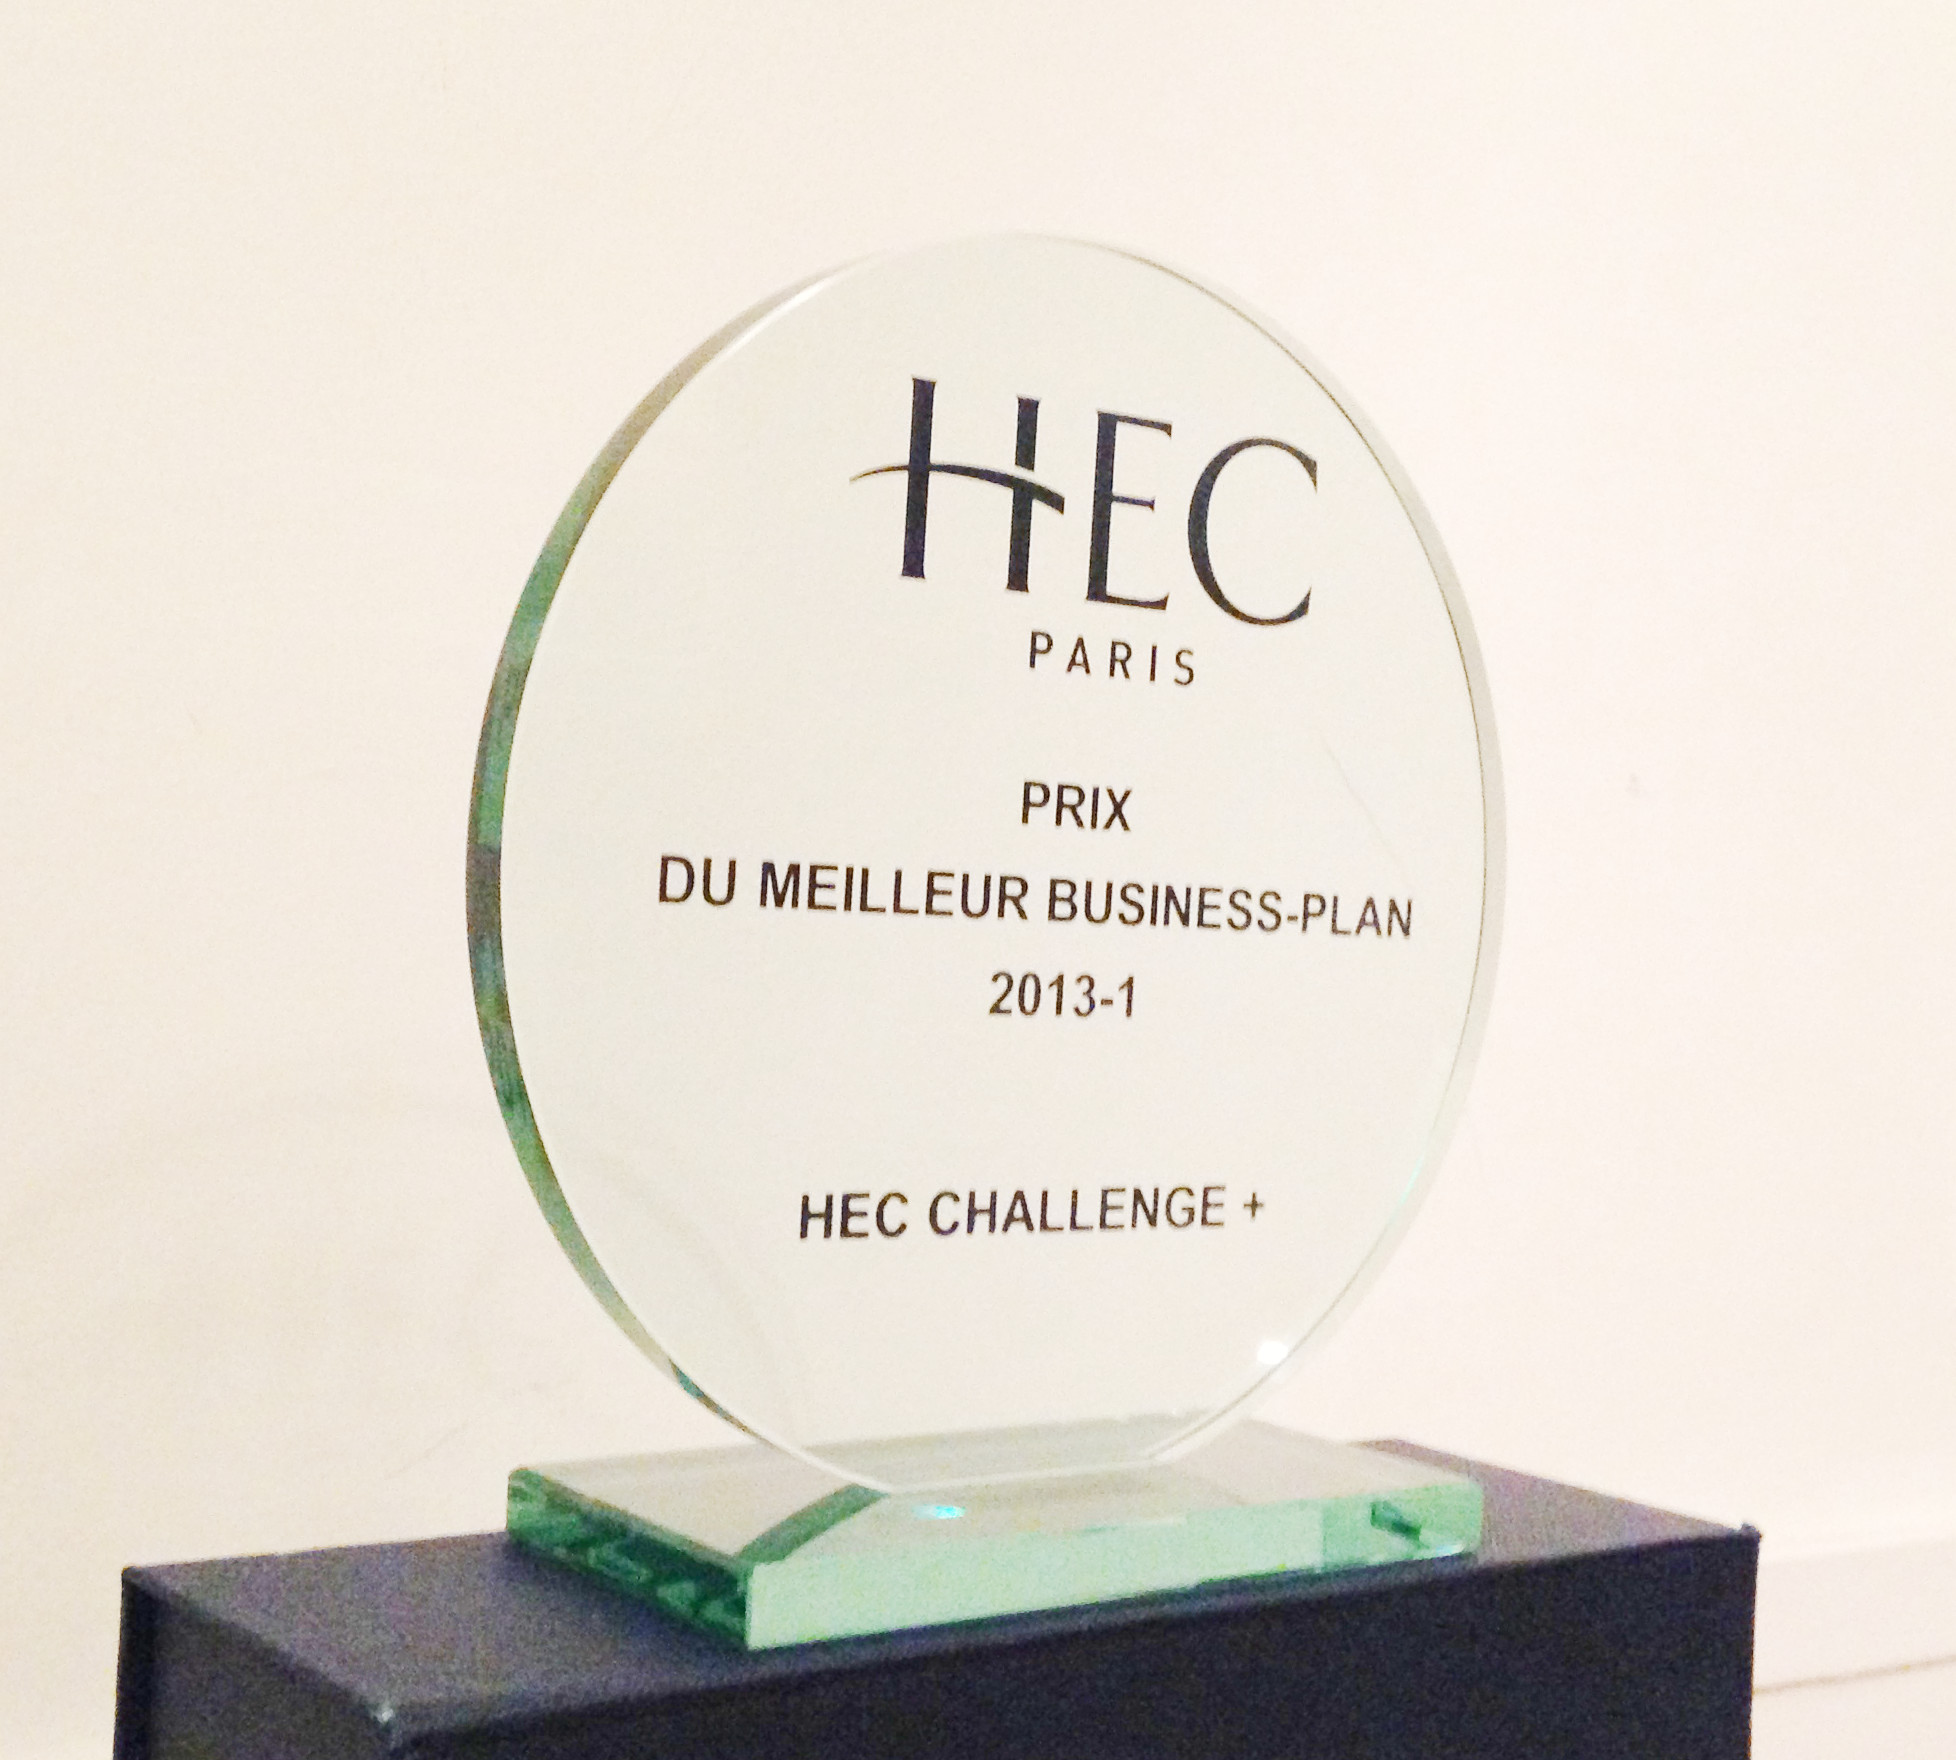 HEC Paris prix du meilleur business-plan 2013-1